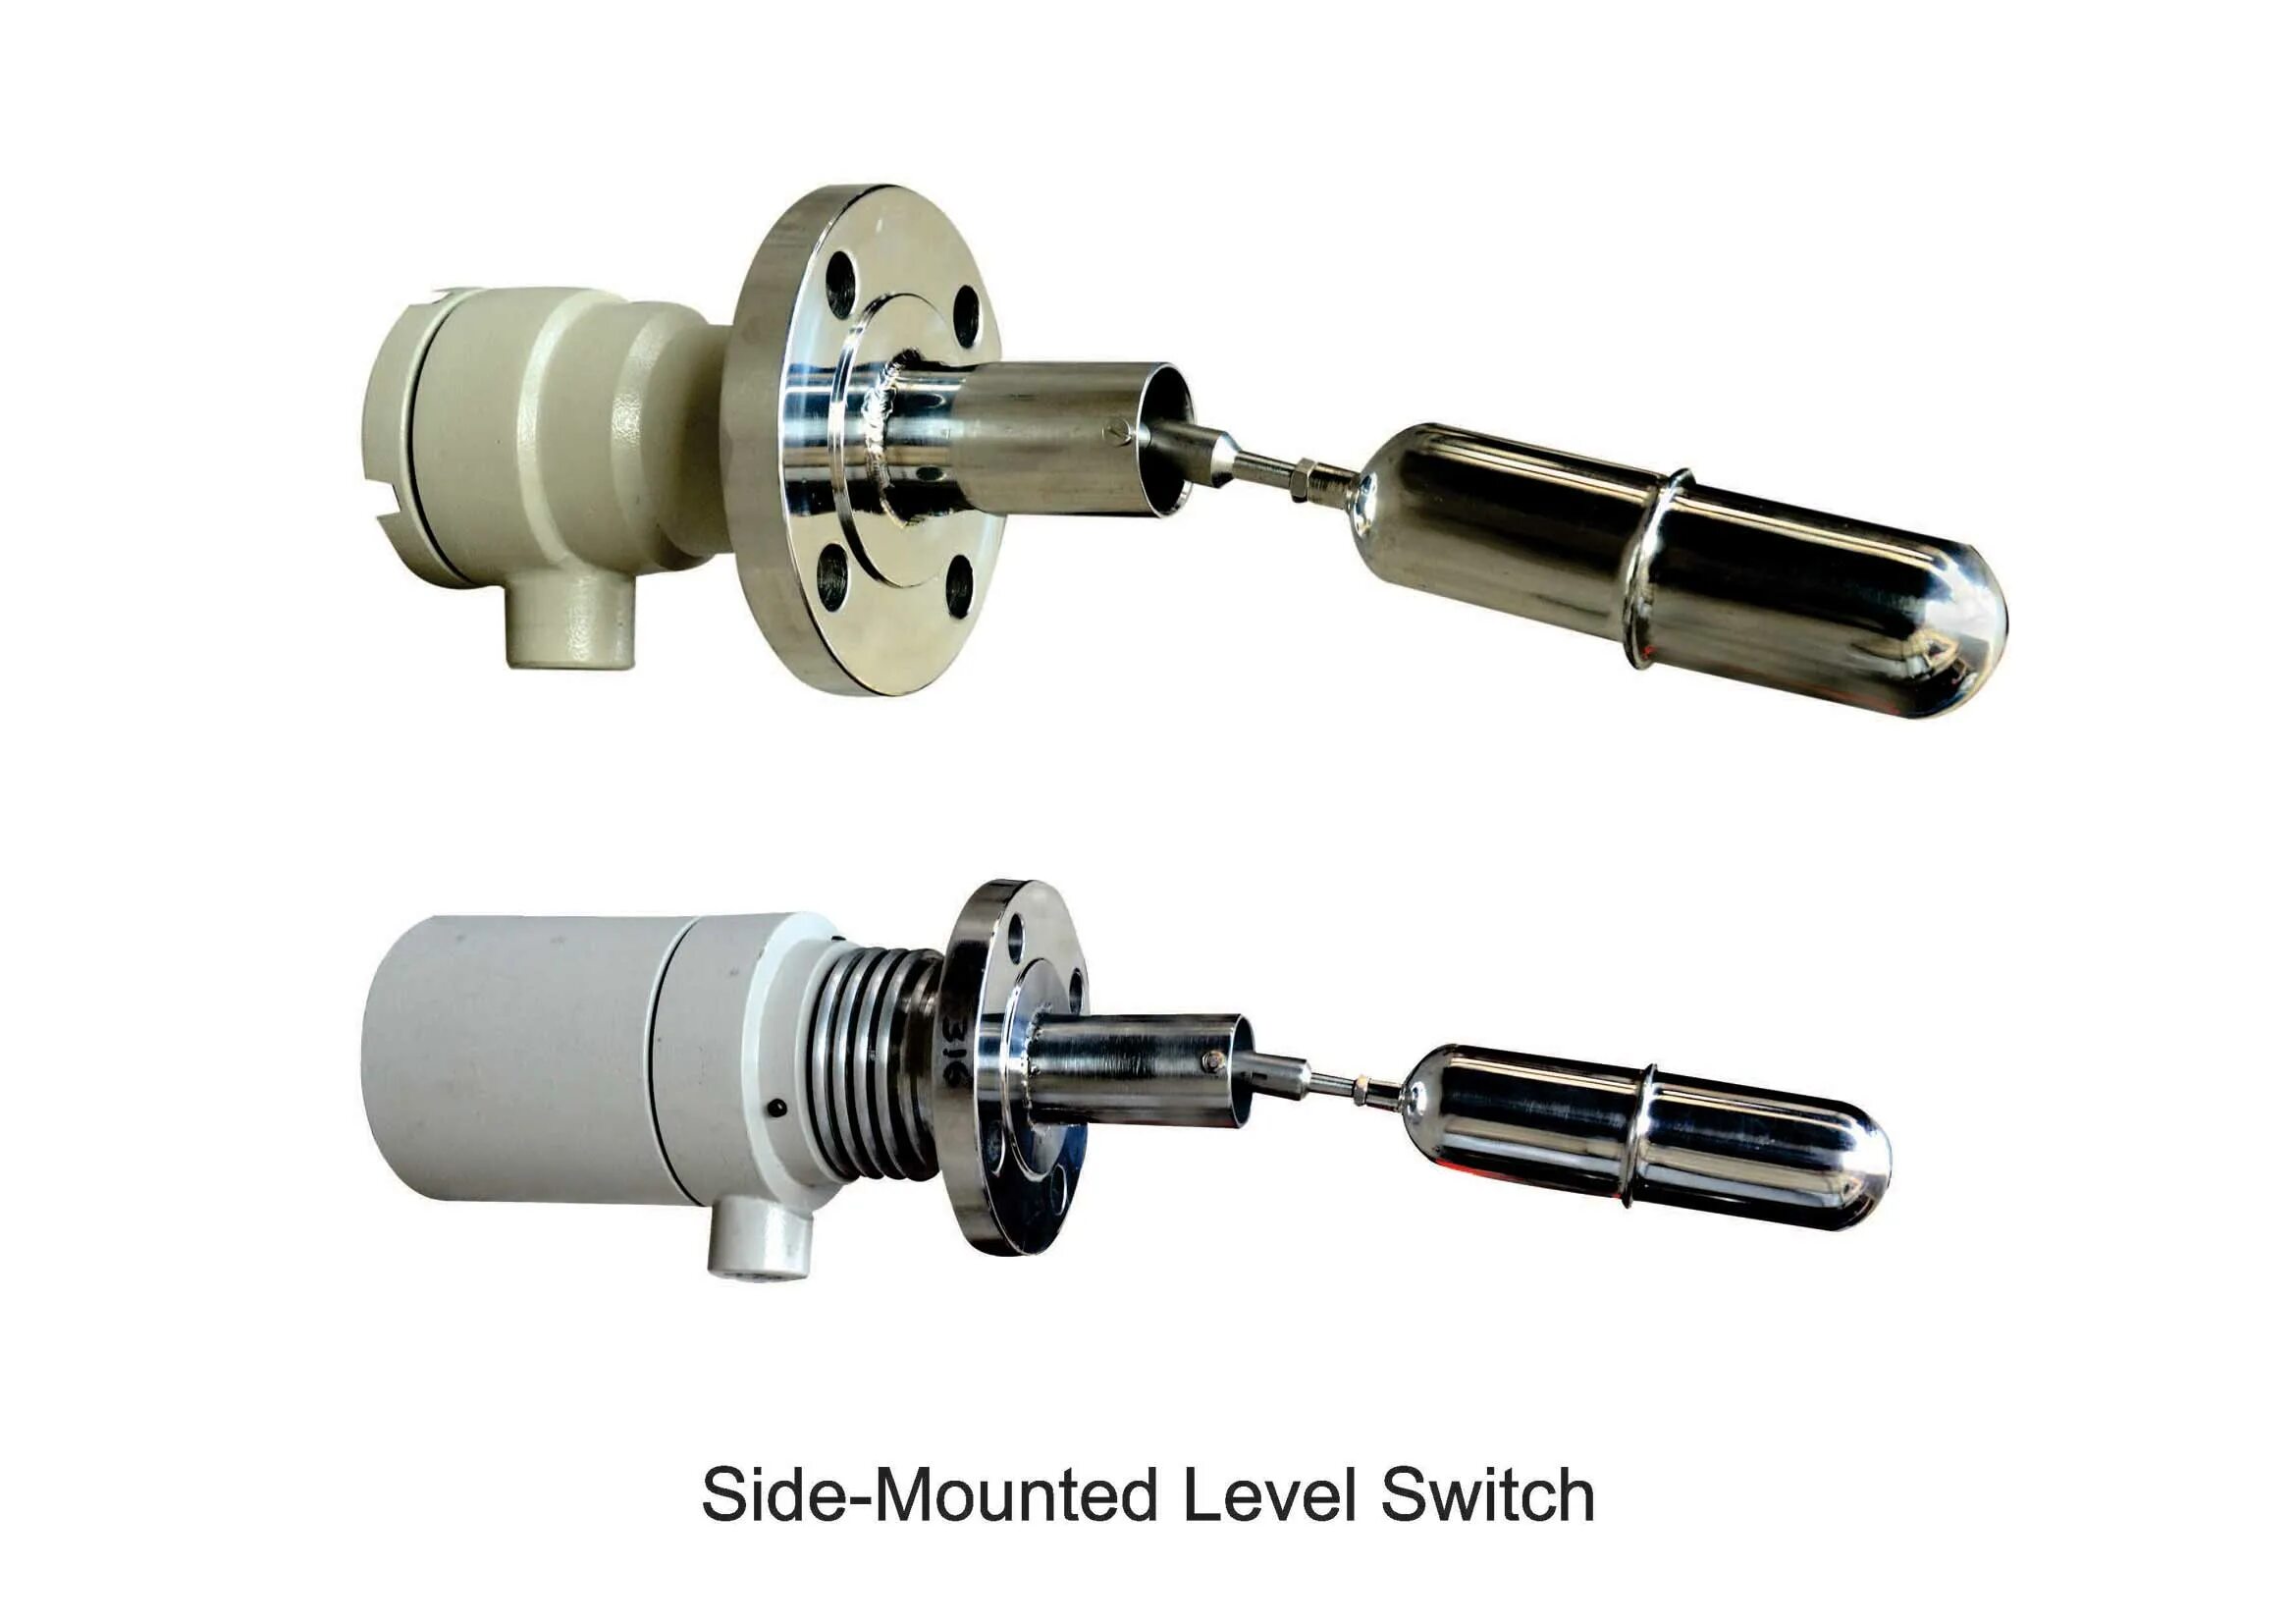 Level switch. Level Switch shm-100e. Level Switch lst6140. Mobrey Level Switch. Level Switch Tester mmk110.